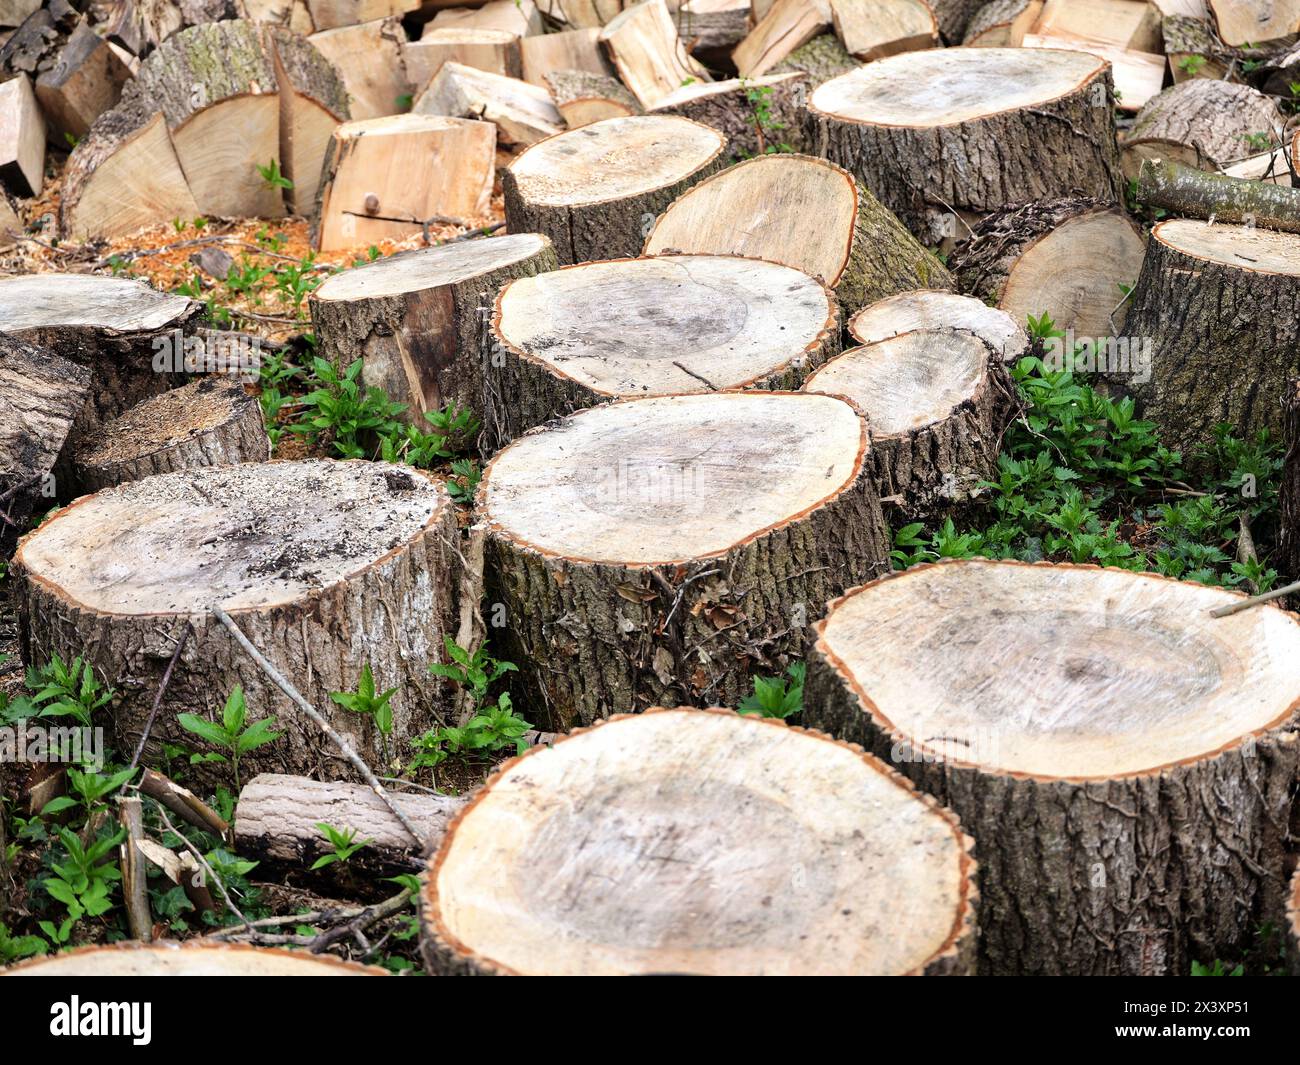 Legname forestale, blocchi di legno, risorse rinnovabili per legna da ardere. Sostenibilità, protezione del clima, benefici ecologici e significato economico. Foto Stock